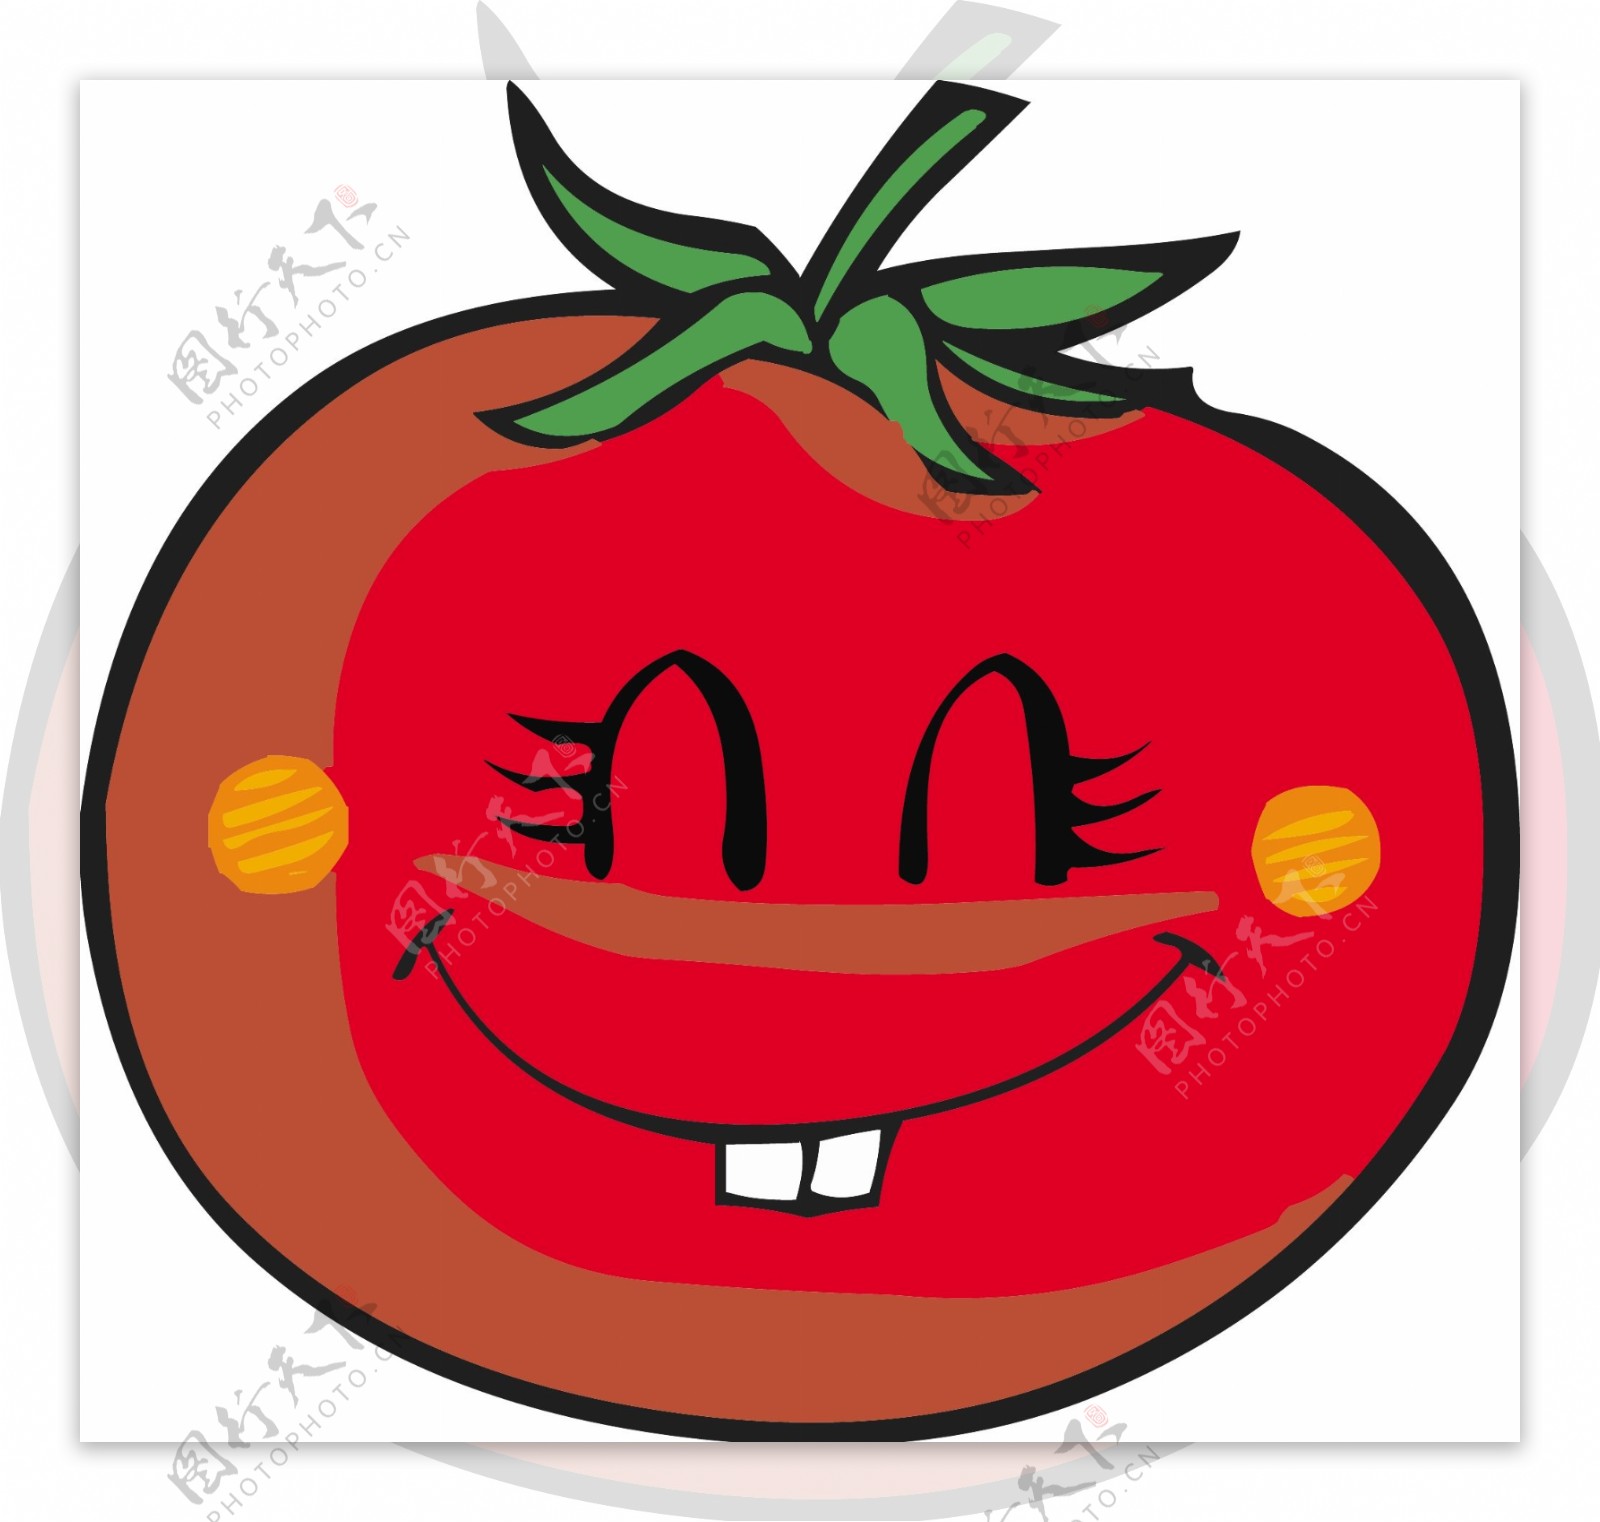 卡通西红柿图片